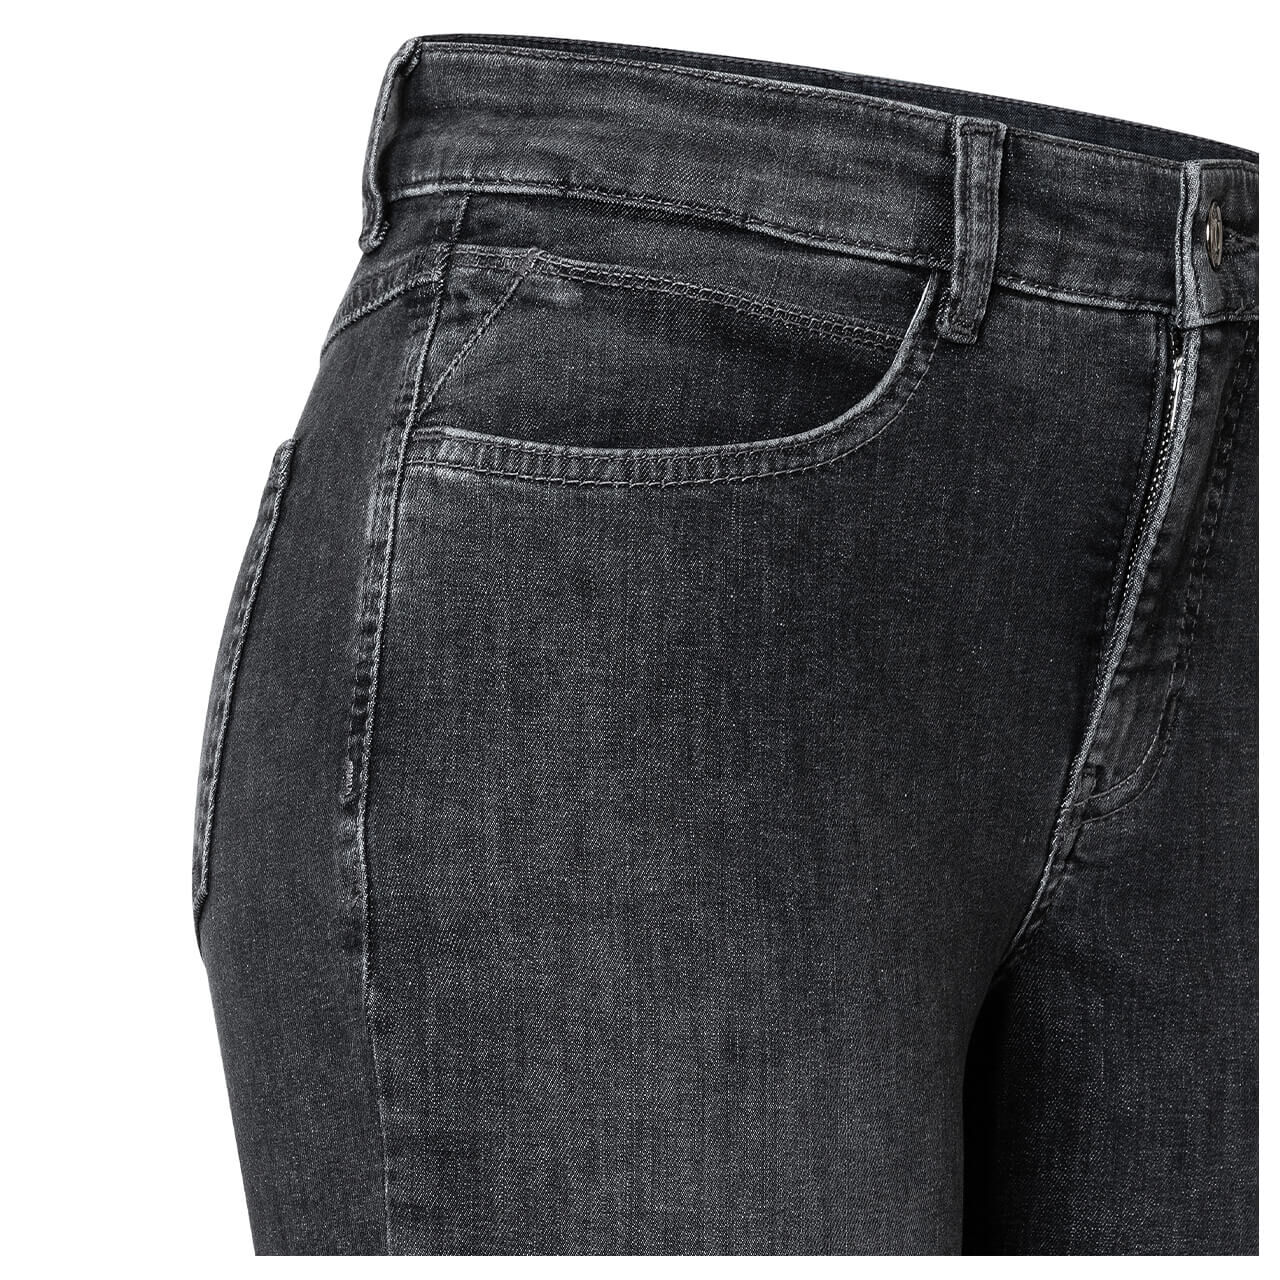 MAC Angela Jeans high low mid grey wash